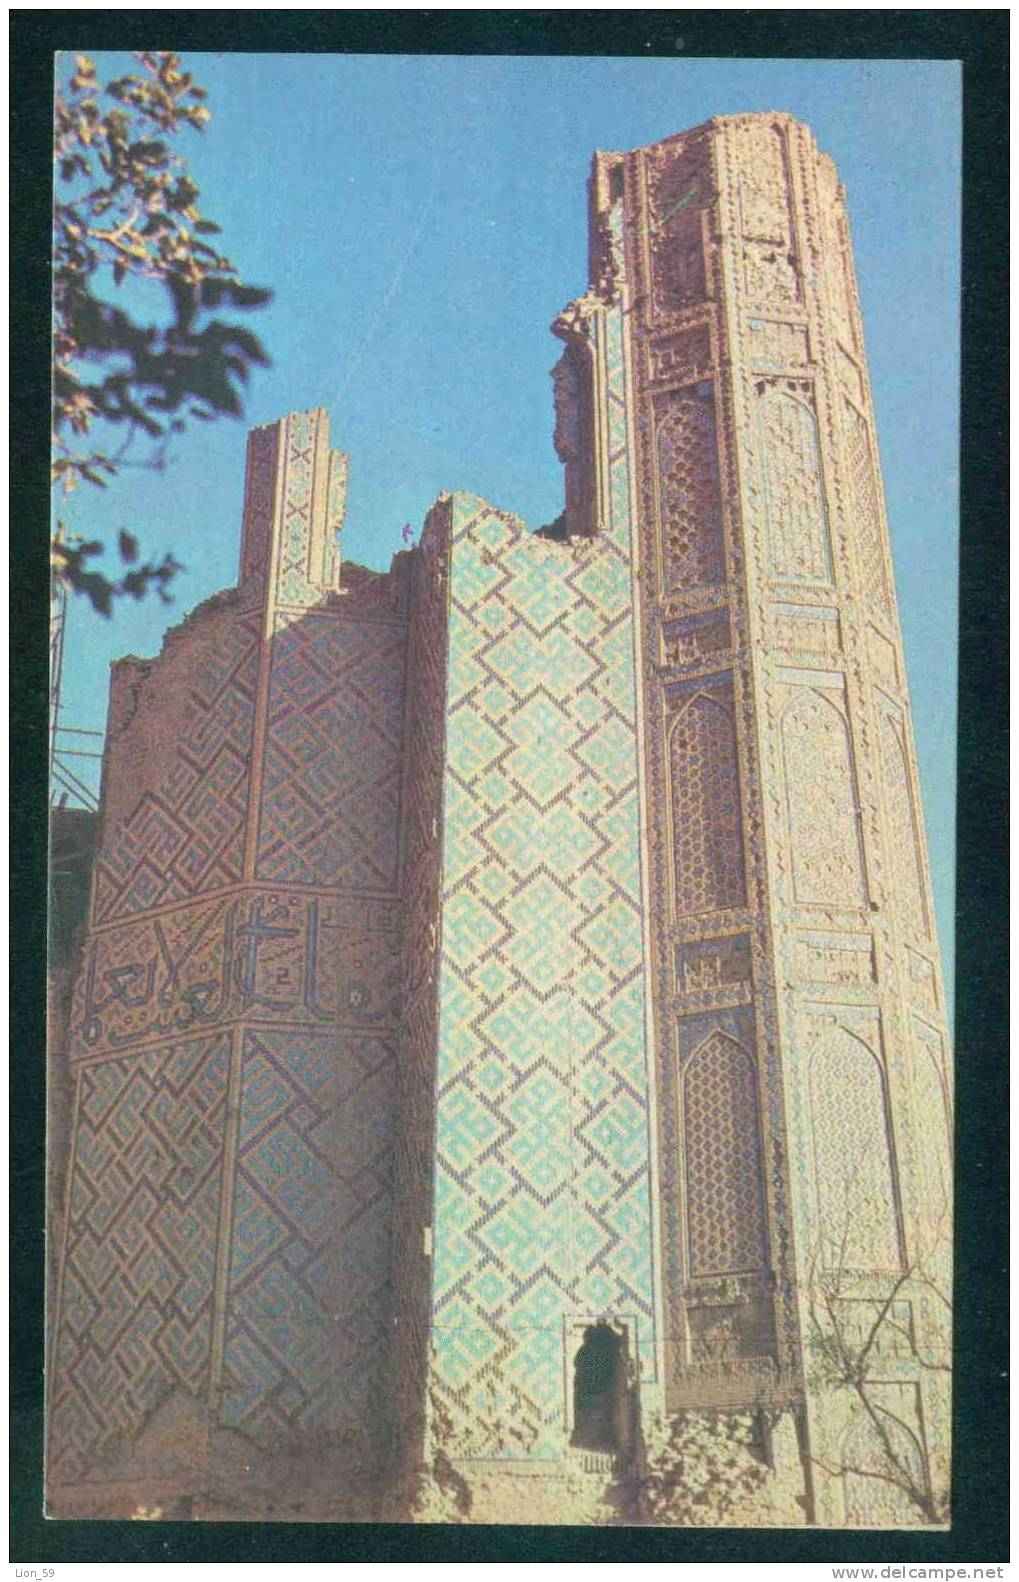 Samarkand / Samarcande - BIBIKHANYM / A FRAGMENT OF THE PORTAL / - Uzbekistan Ouzbékistan 108102 - Usbekistan